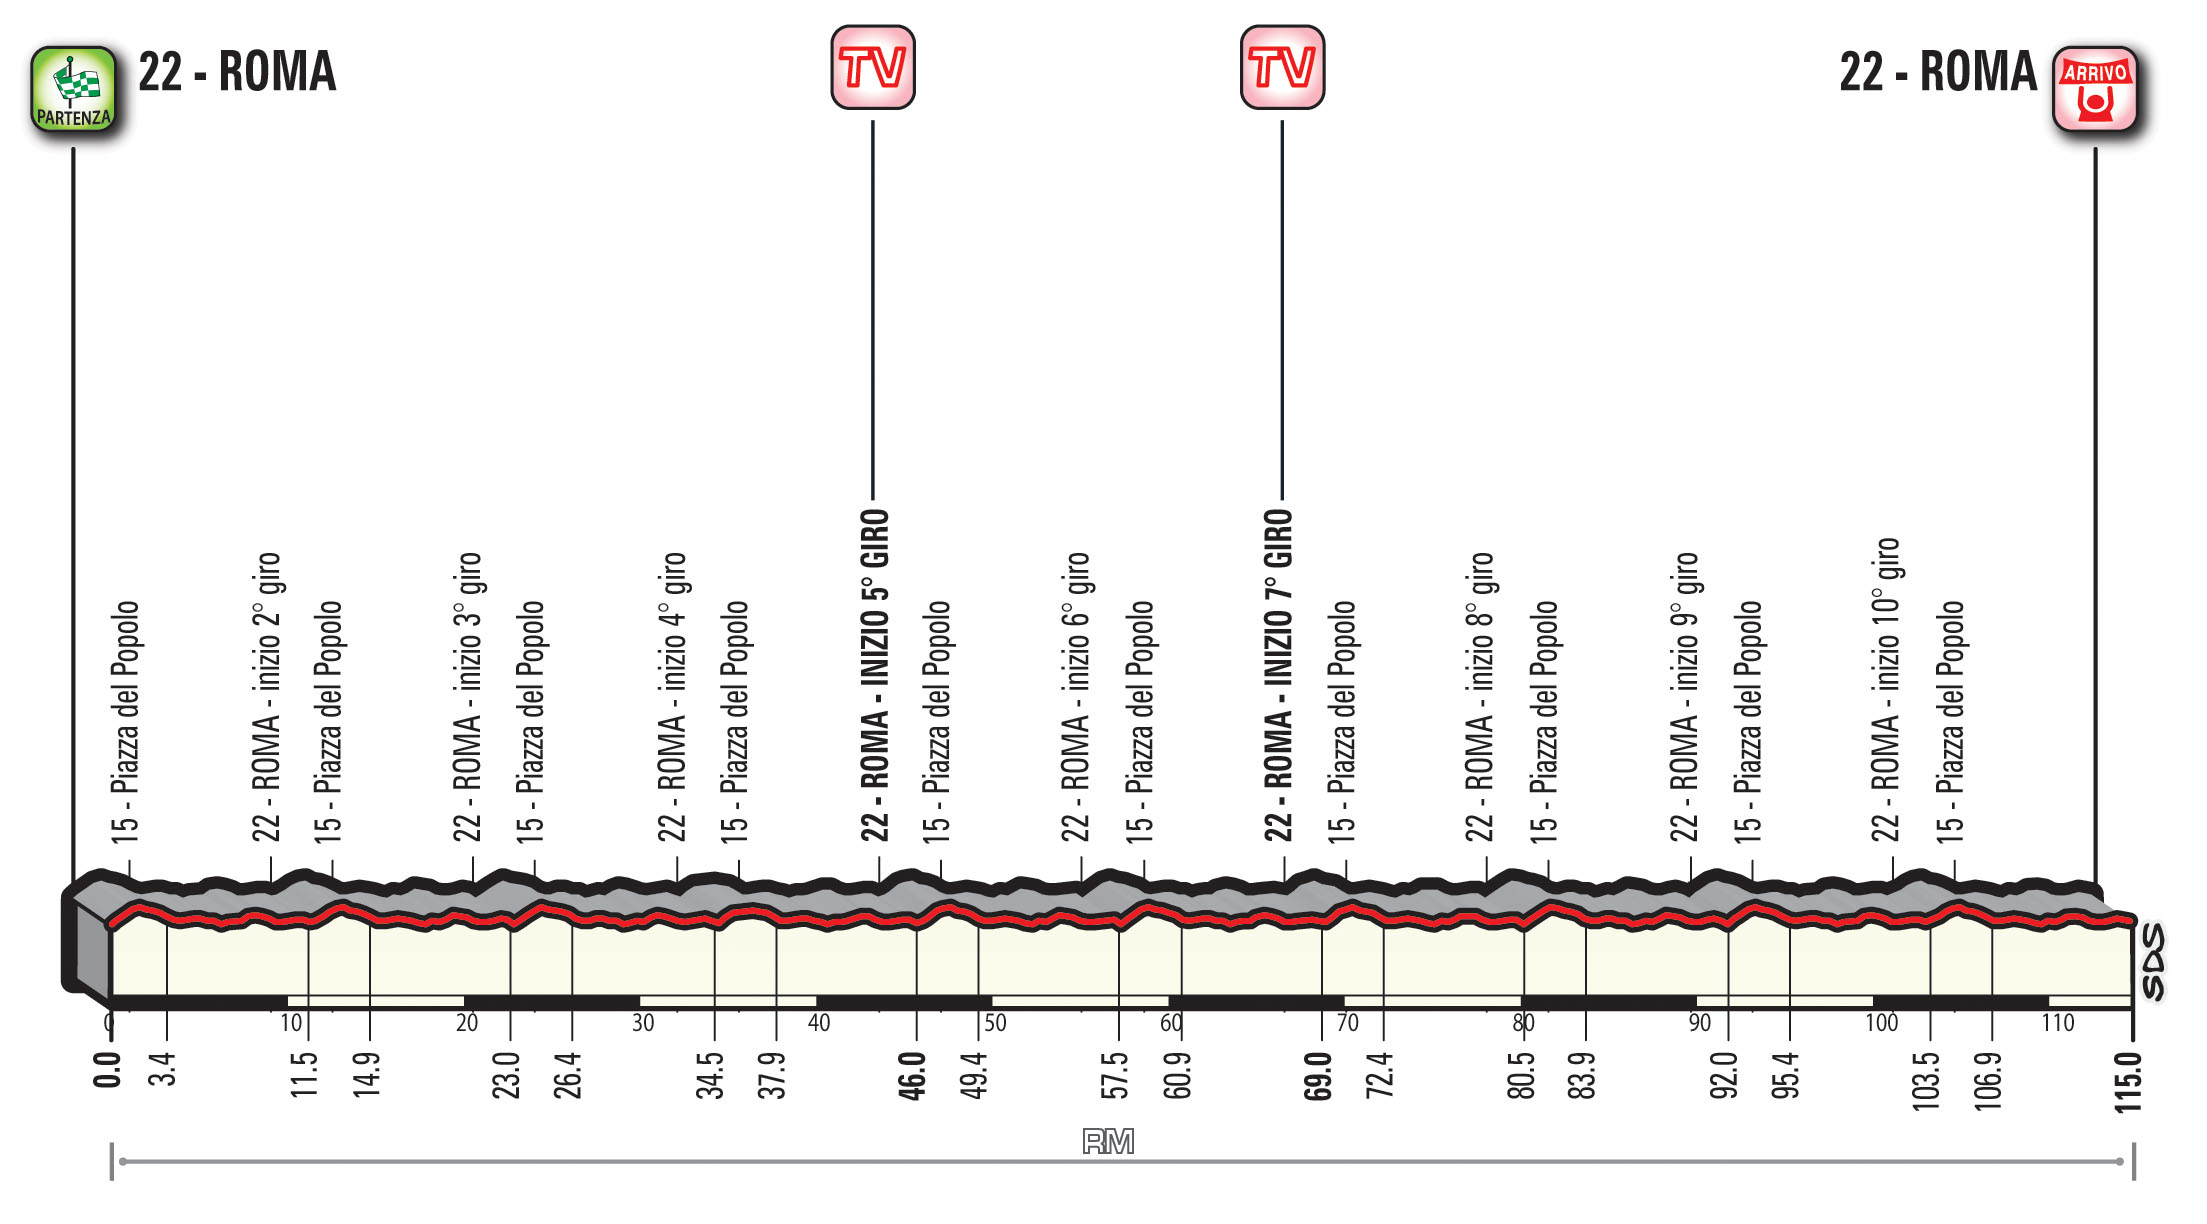 profil 21. etapu Giro d'Italia 2018